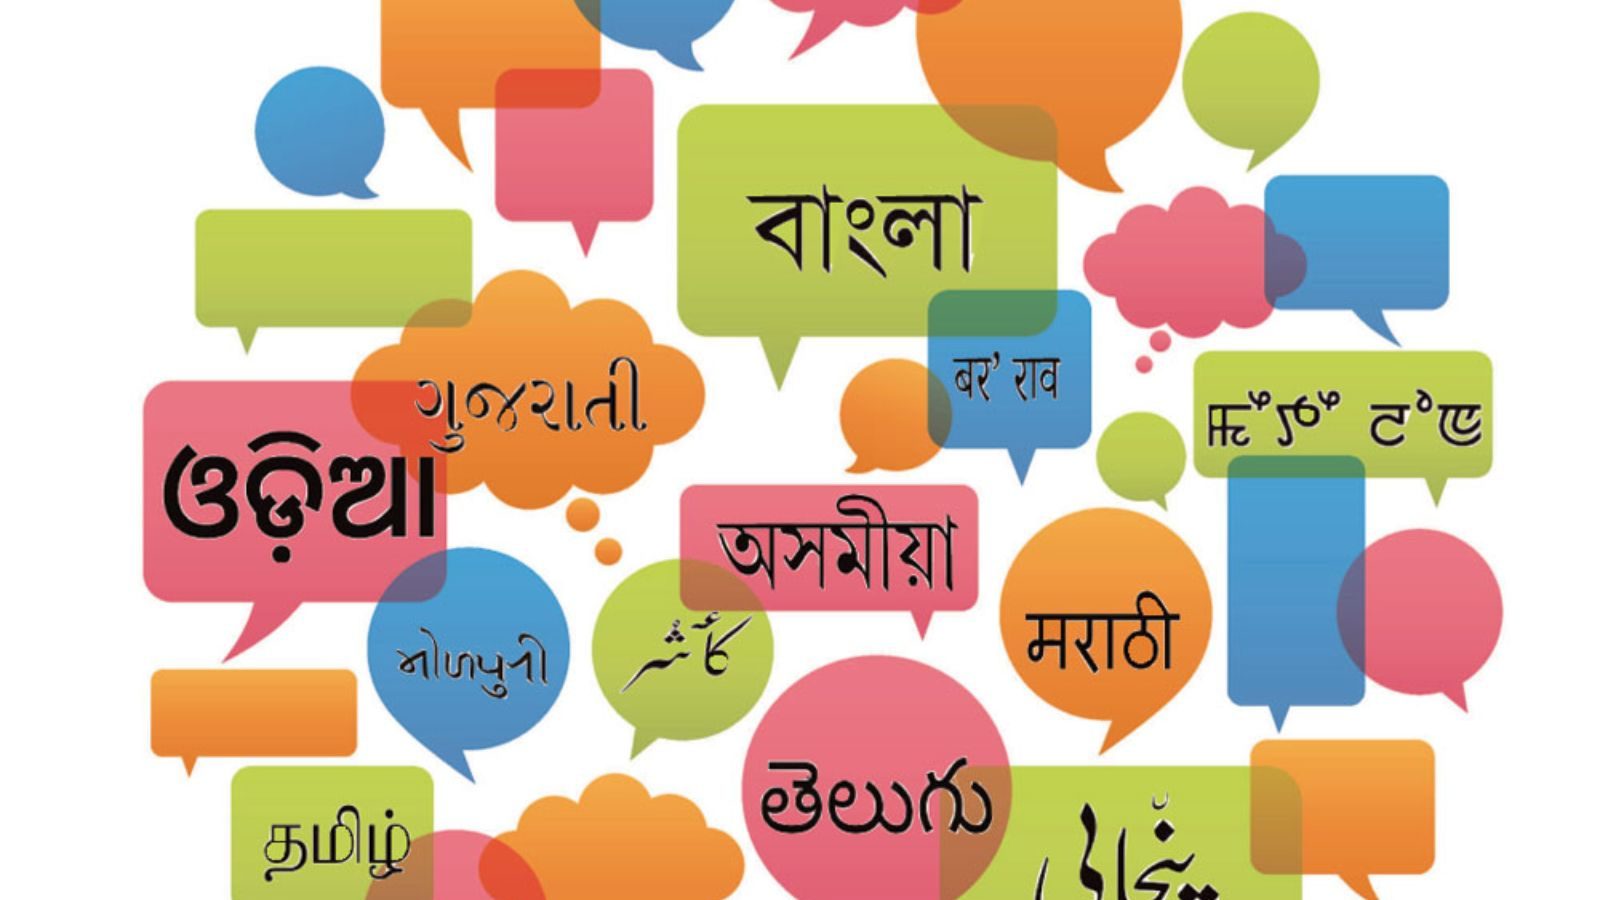 Tahukah Anda berapa banyak tempat yang dimiliki India dalam daftar negara yang menggunakan sebagian besar bahasa?